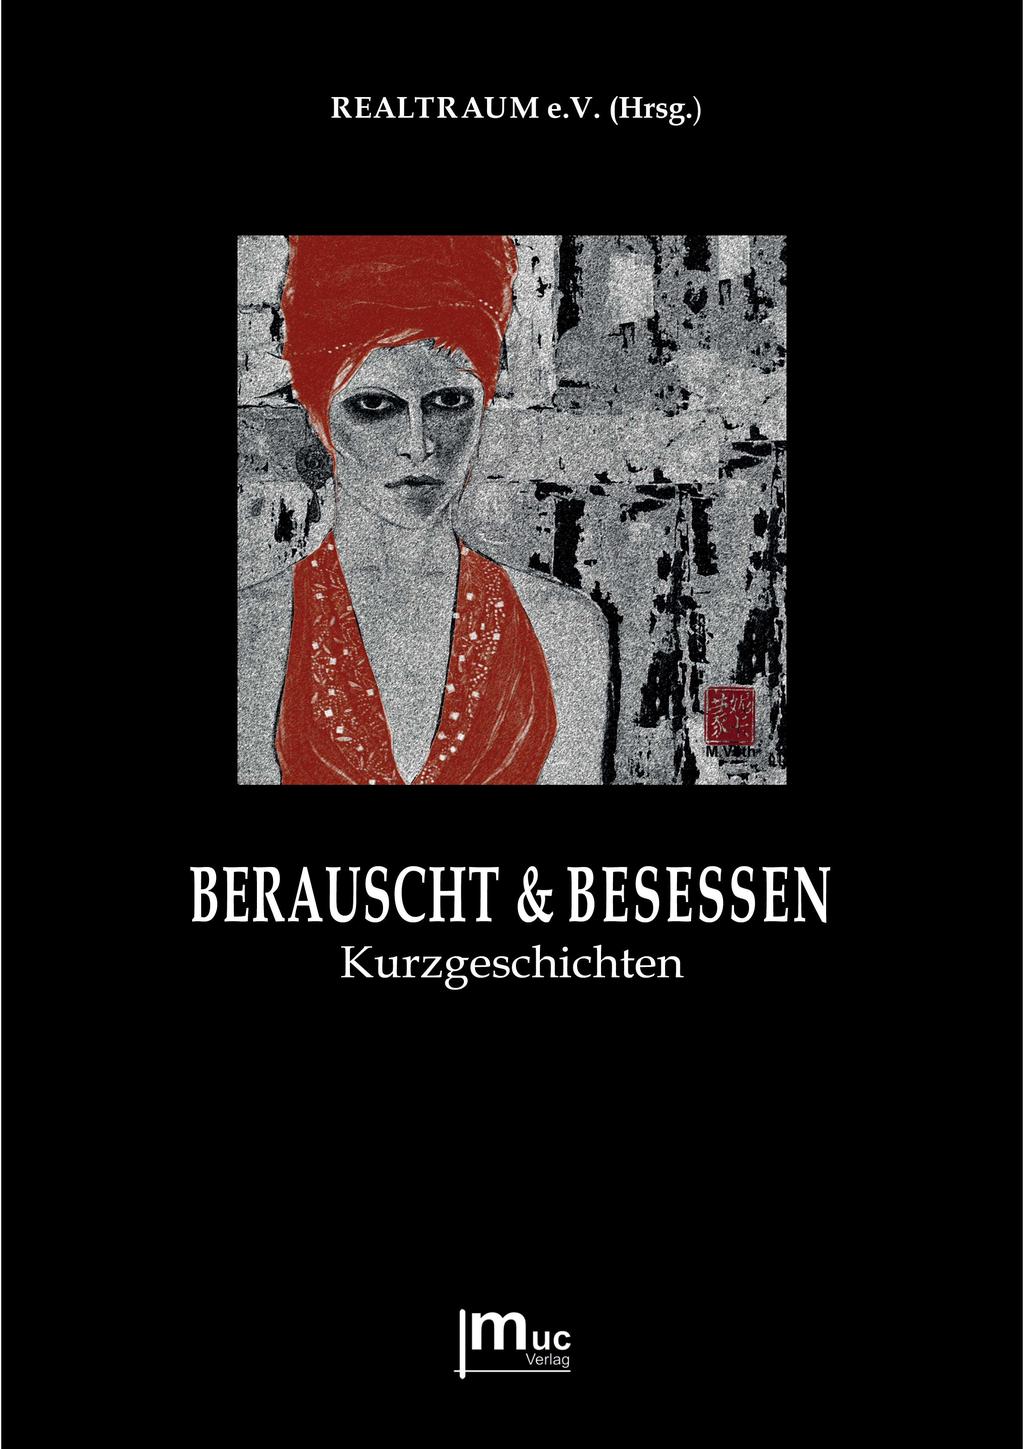 Zweite Realtraum-Anthologie Berauscht & Besessen Veranstaltung im September Mitte September erscheint unsere zweite Anthologie:»BERAUSCHT & BESESSEN«Kurzgeschichten (muc Verlag, München) http://www.